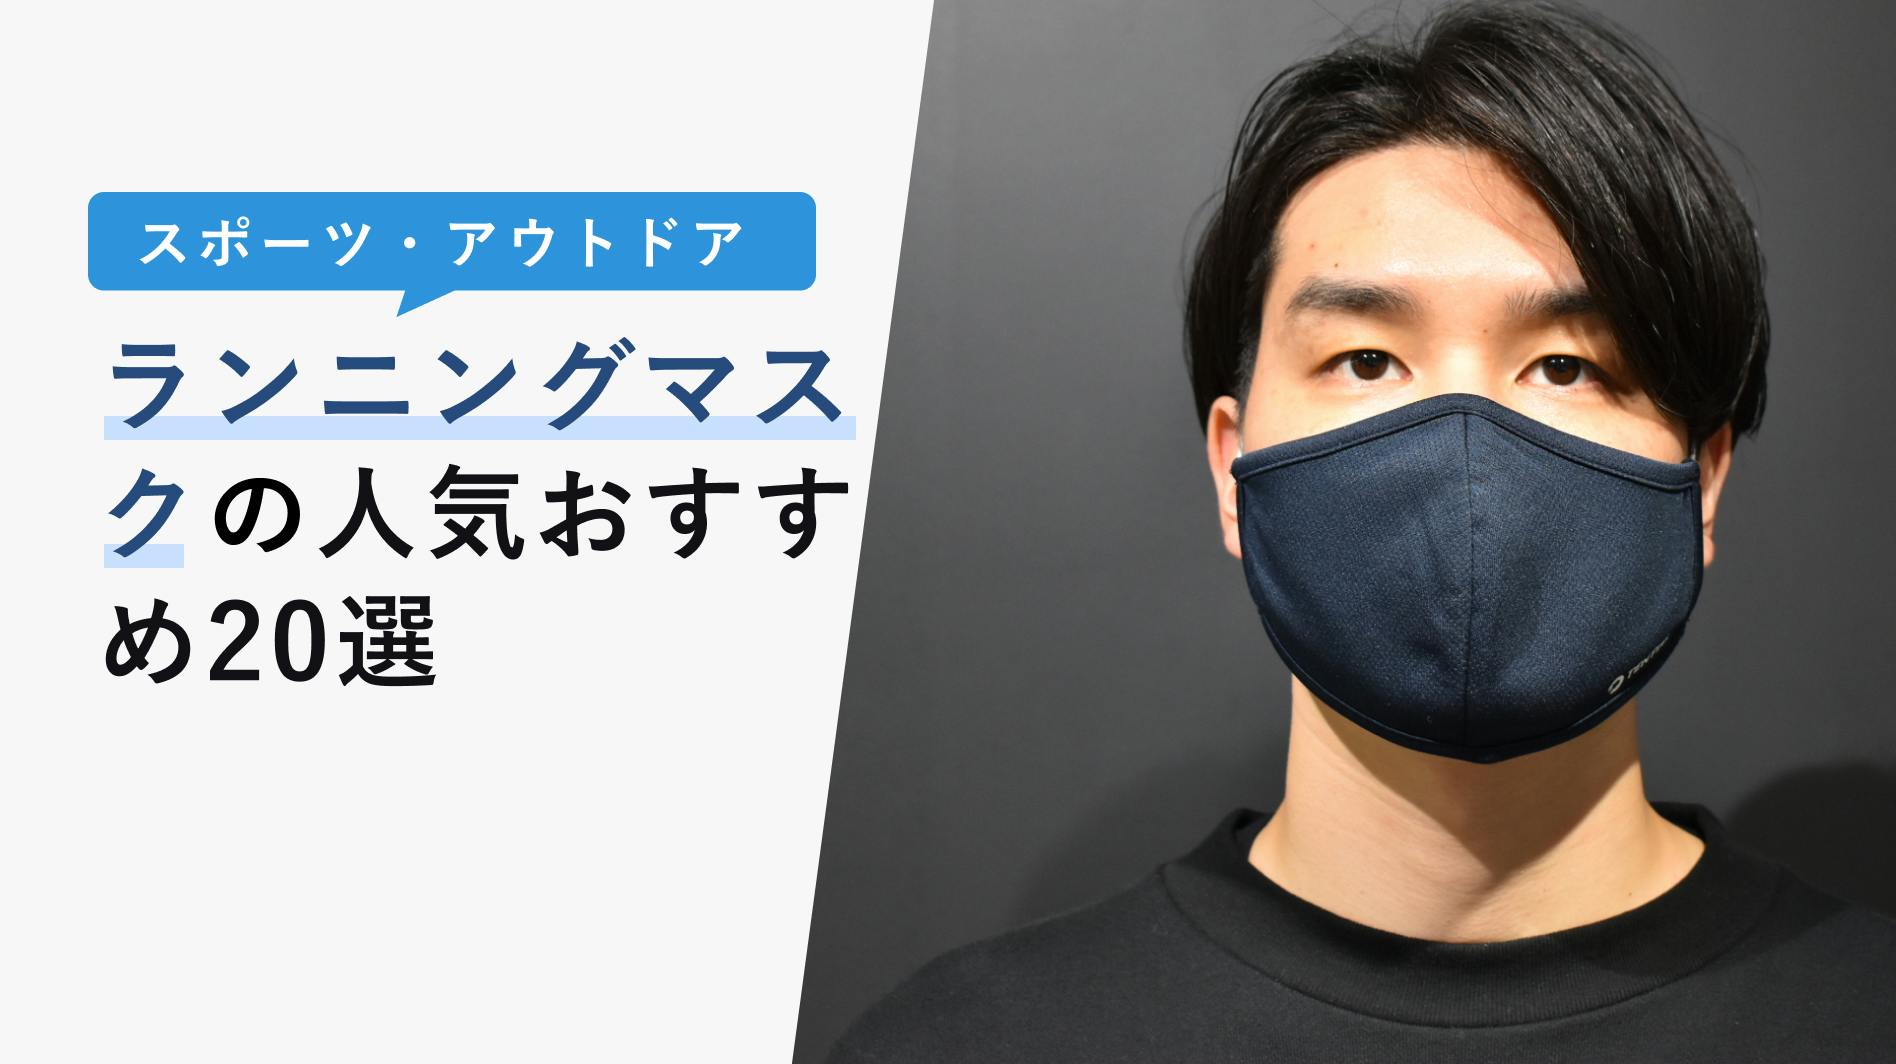 スポーツマスク フィルター付 フェイスマスク 運動用 トレーニング